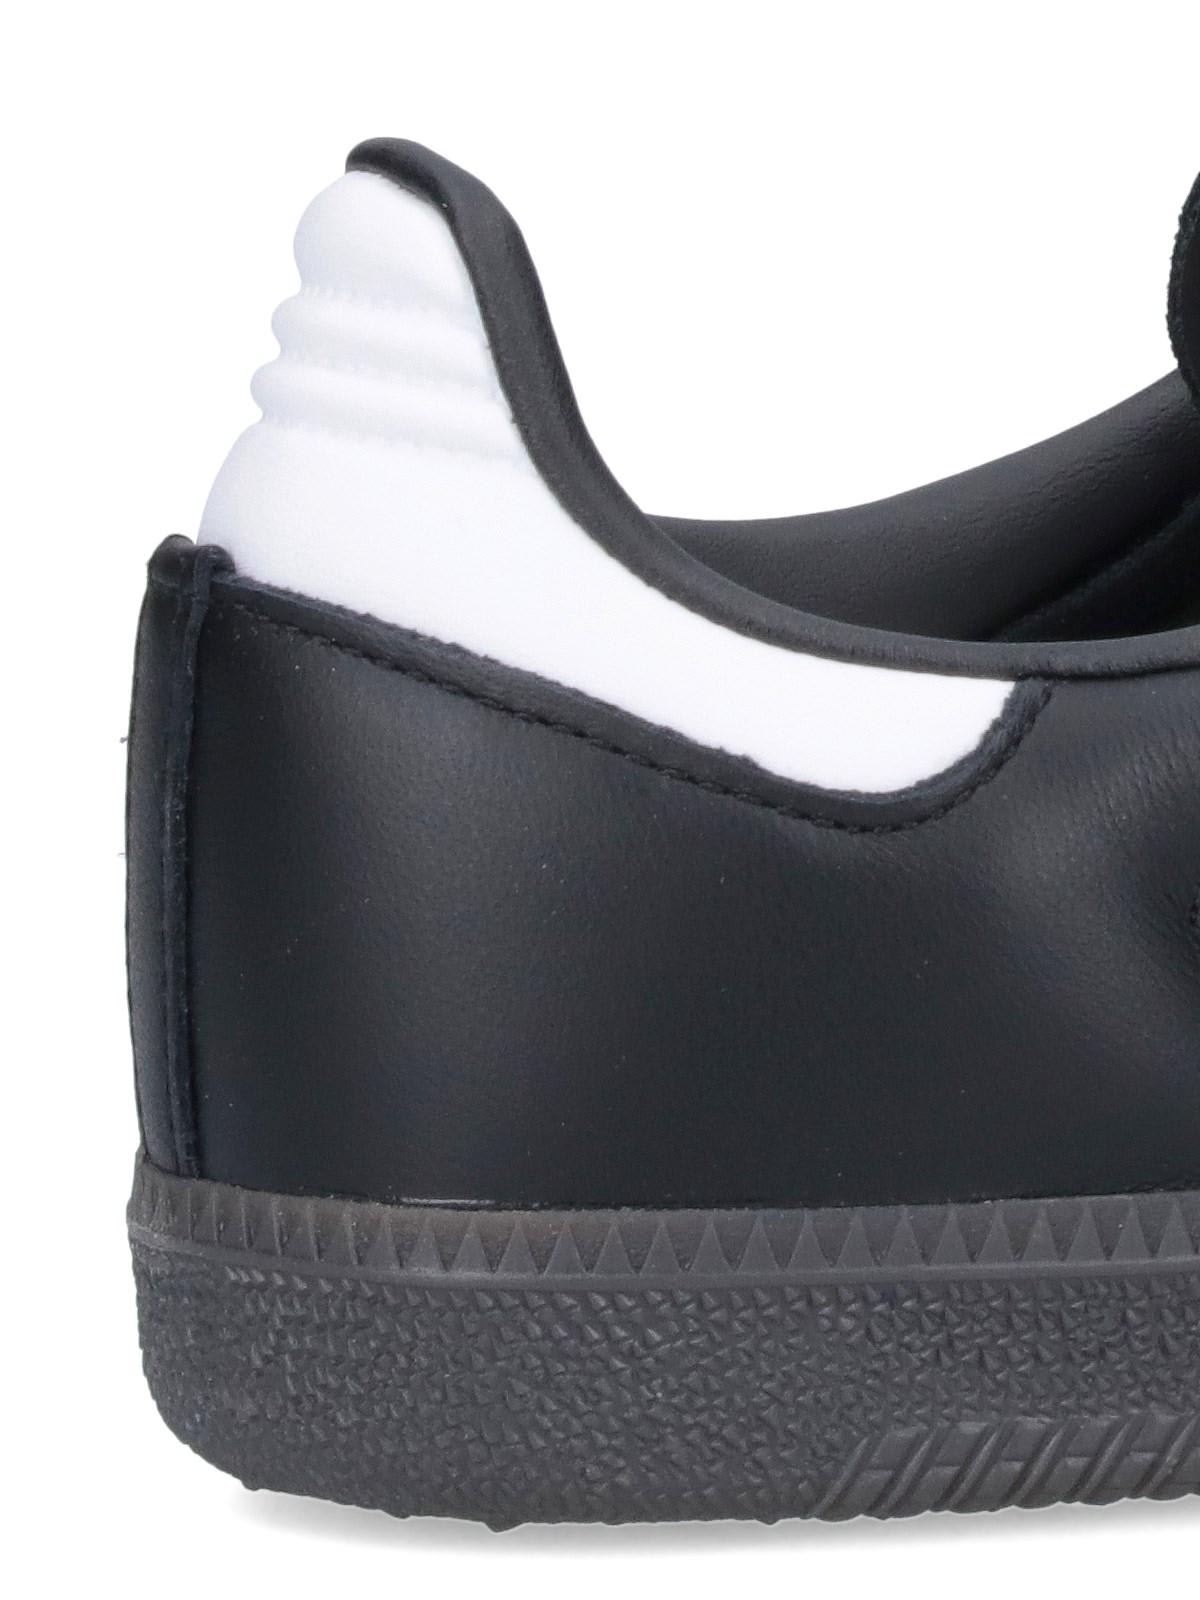 Adidas Originals Samba Og Sneakers In Black